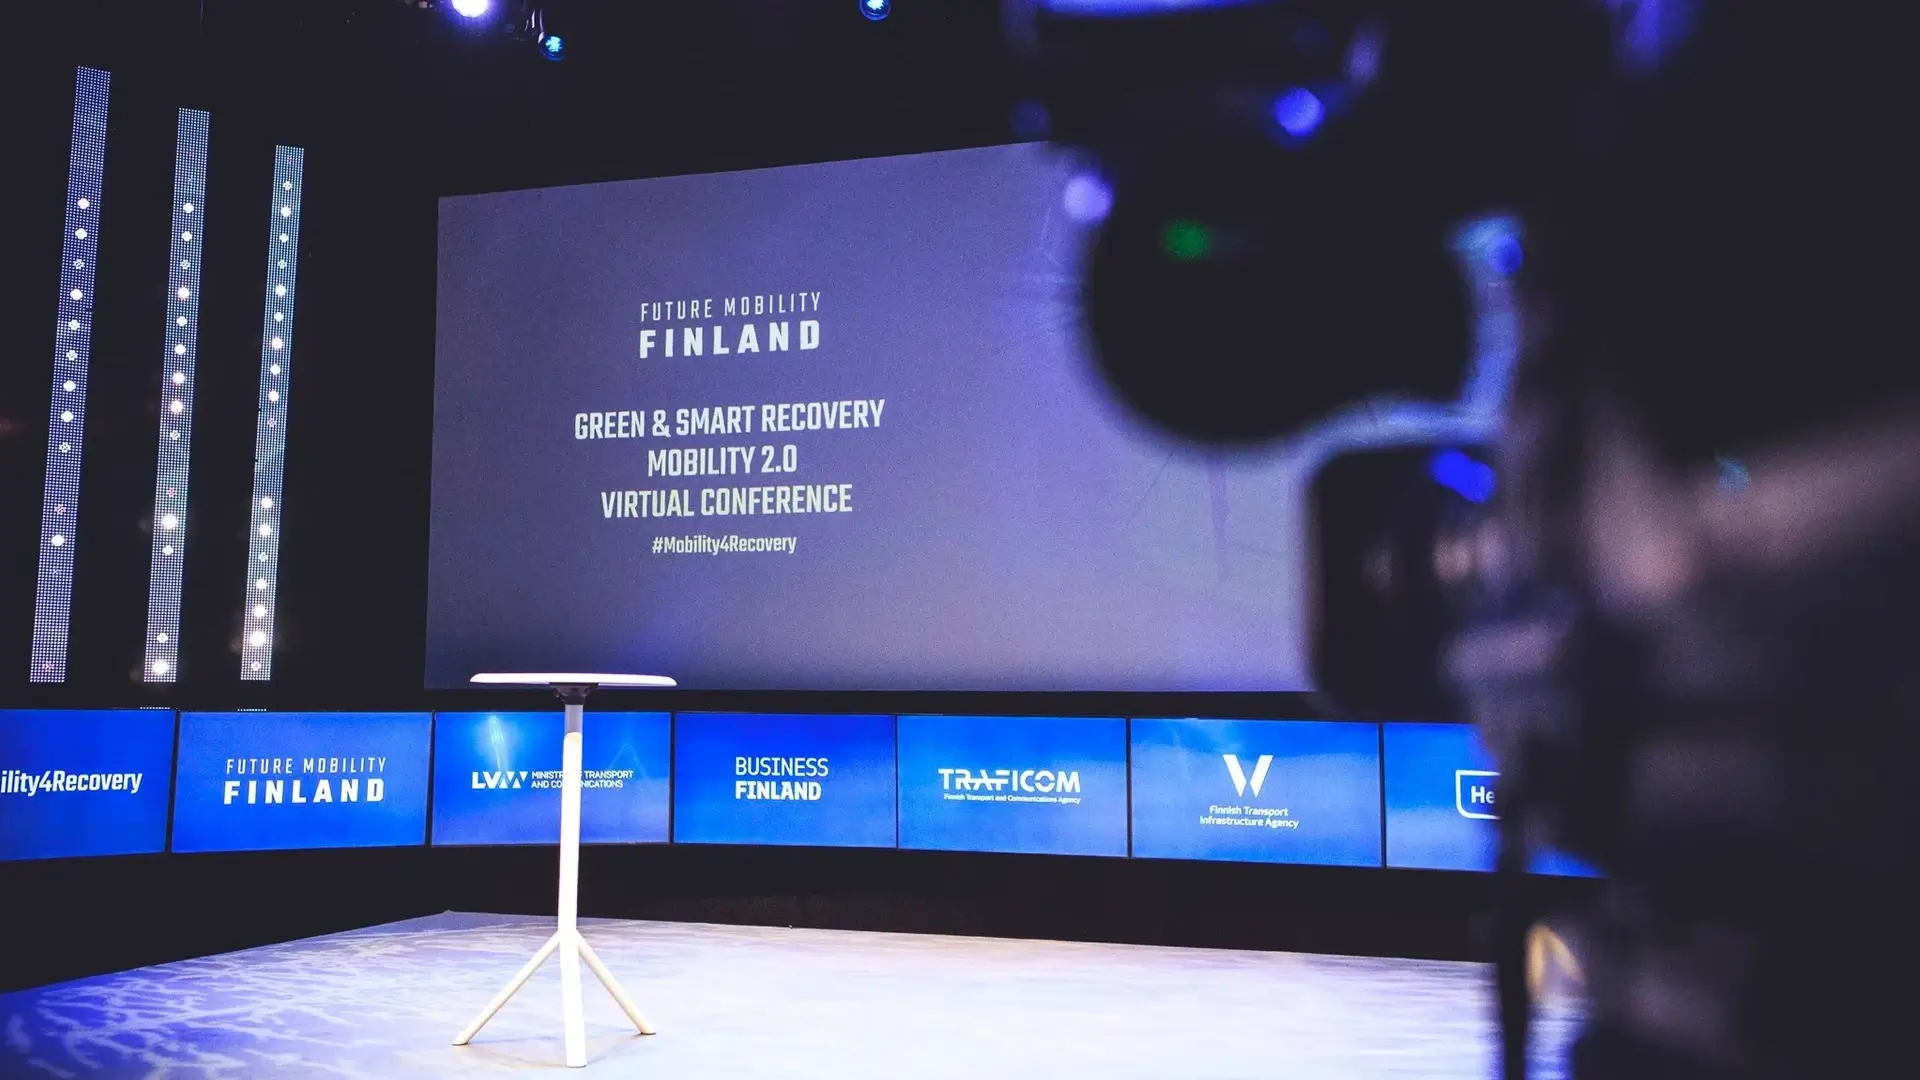 Future mobility Finland conference presentation